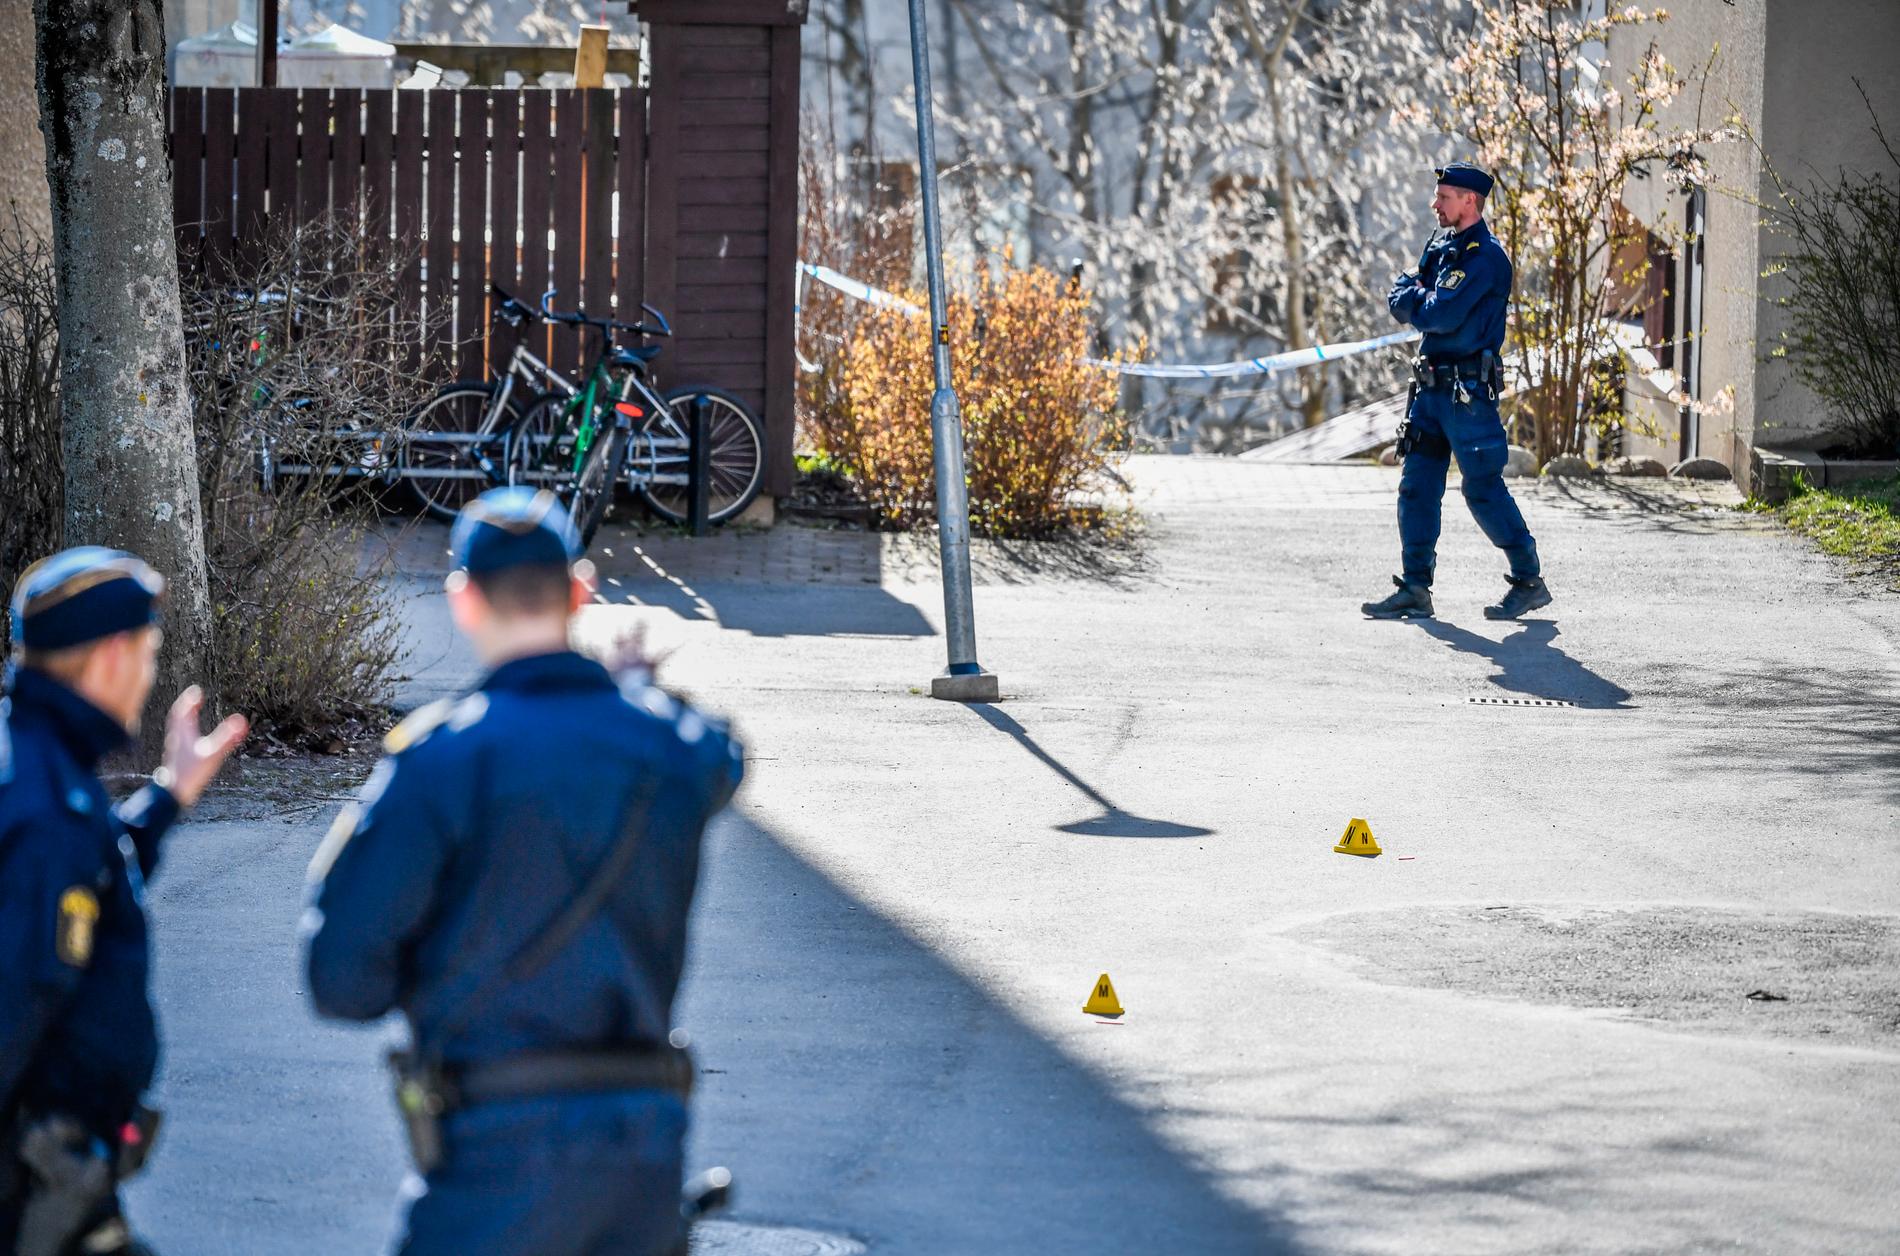 Polisens tekniker på plats i Kista där en ung man sköts till döds med flera skott under natten till den 18 april i år.